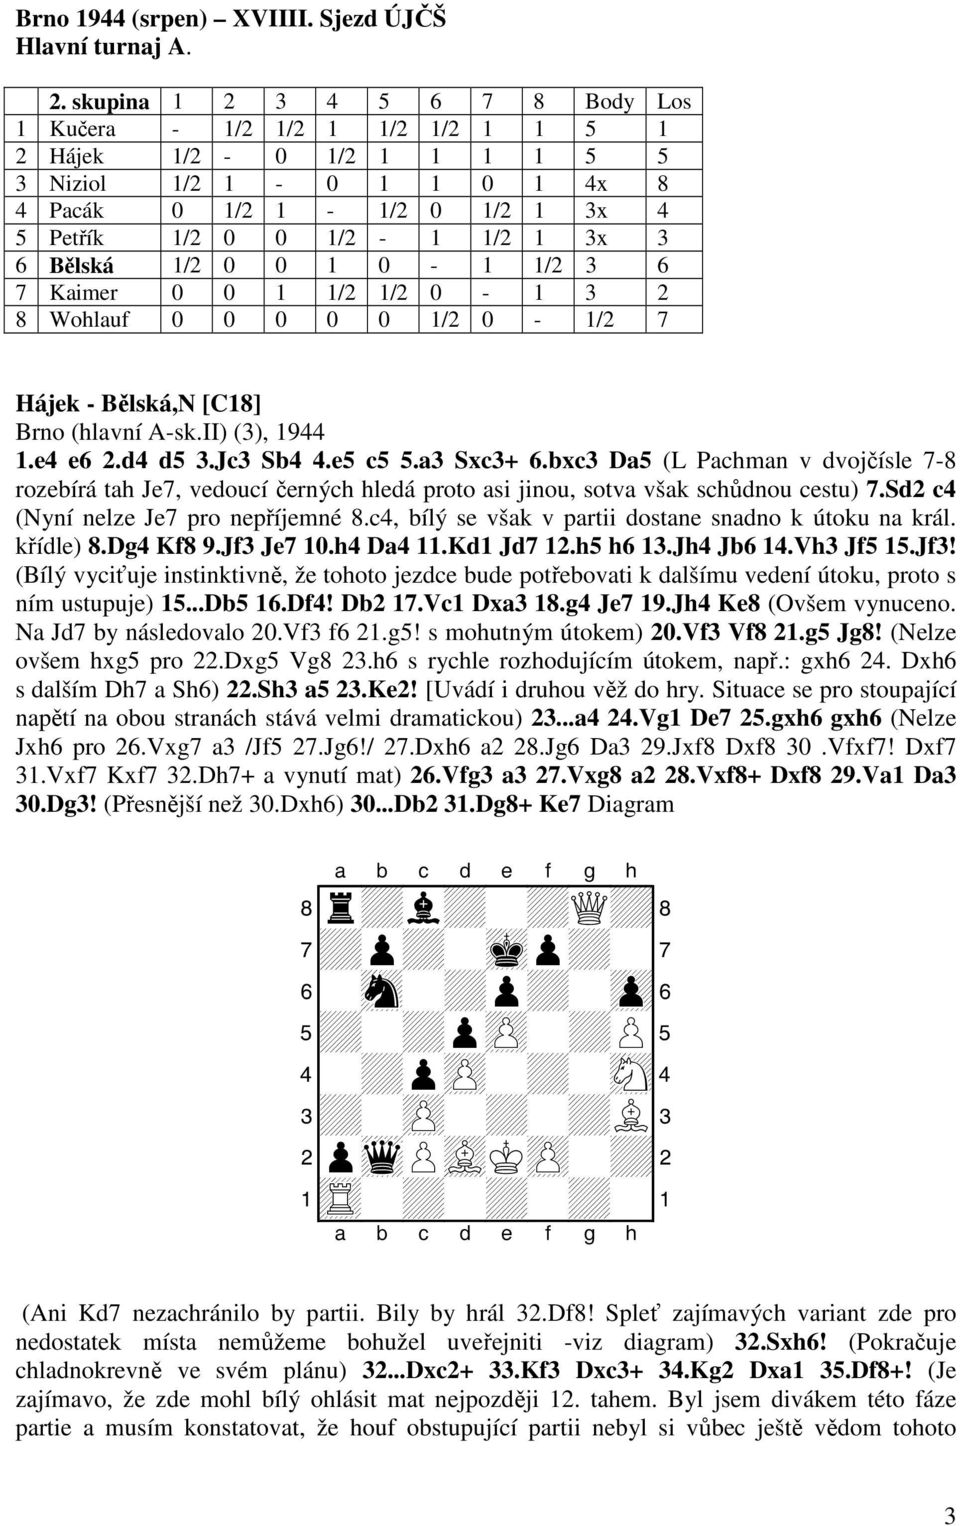 Bělská 1/2 0 0 1 0-1 1/2 3 6 7 Kaimer 0 0 1 1/2 1/2 0-1 3 2 8 Wohlauf 0 0 0 0 0 1/2 0-1/2 7 Hájek - Bělská,N [C18] Brno (hlavní A-sk.II) (3), 1944 1.e4 e6 2.d4 d5 3.Jc3 Sb4 4.e5 c5 5.a3 Sxc3+ 6.